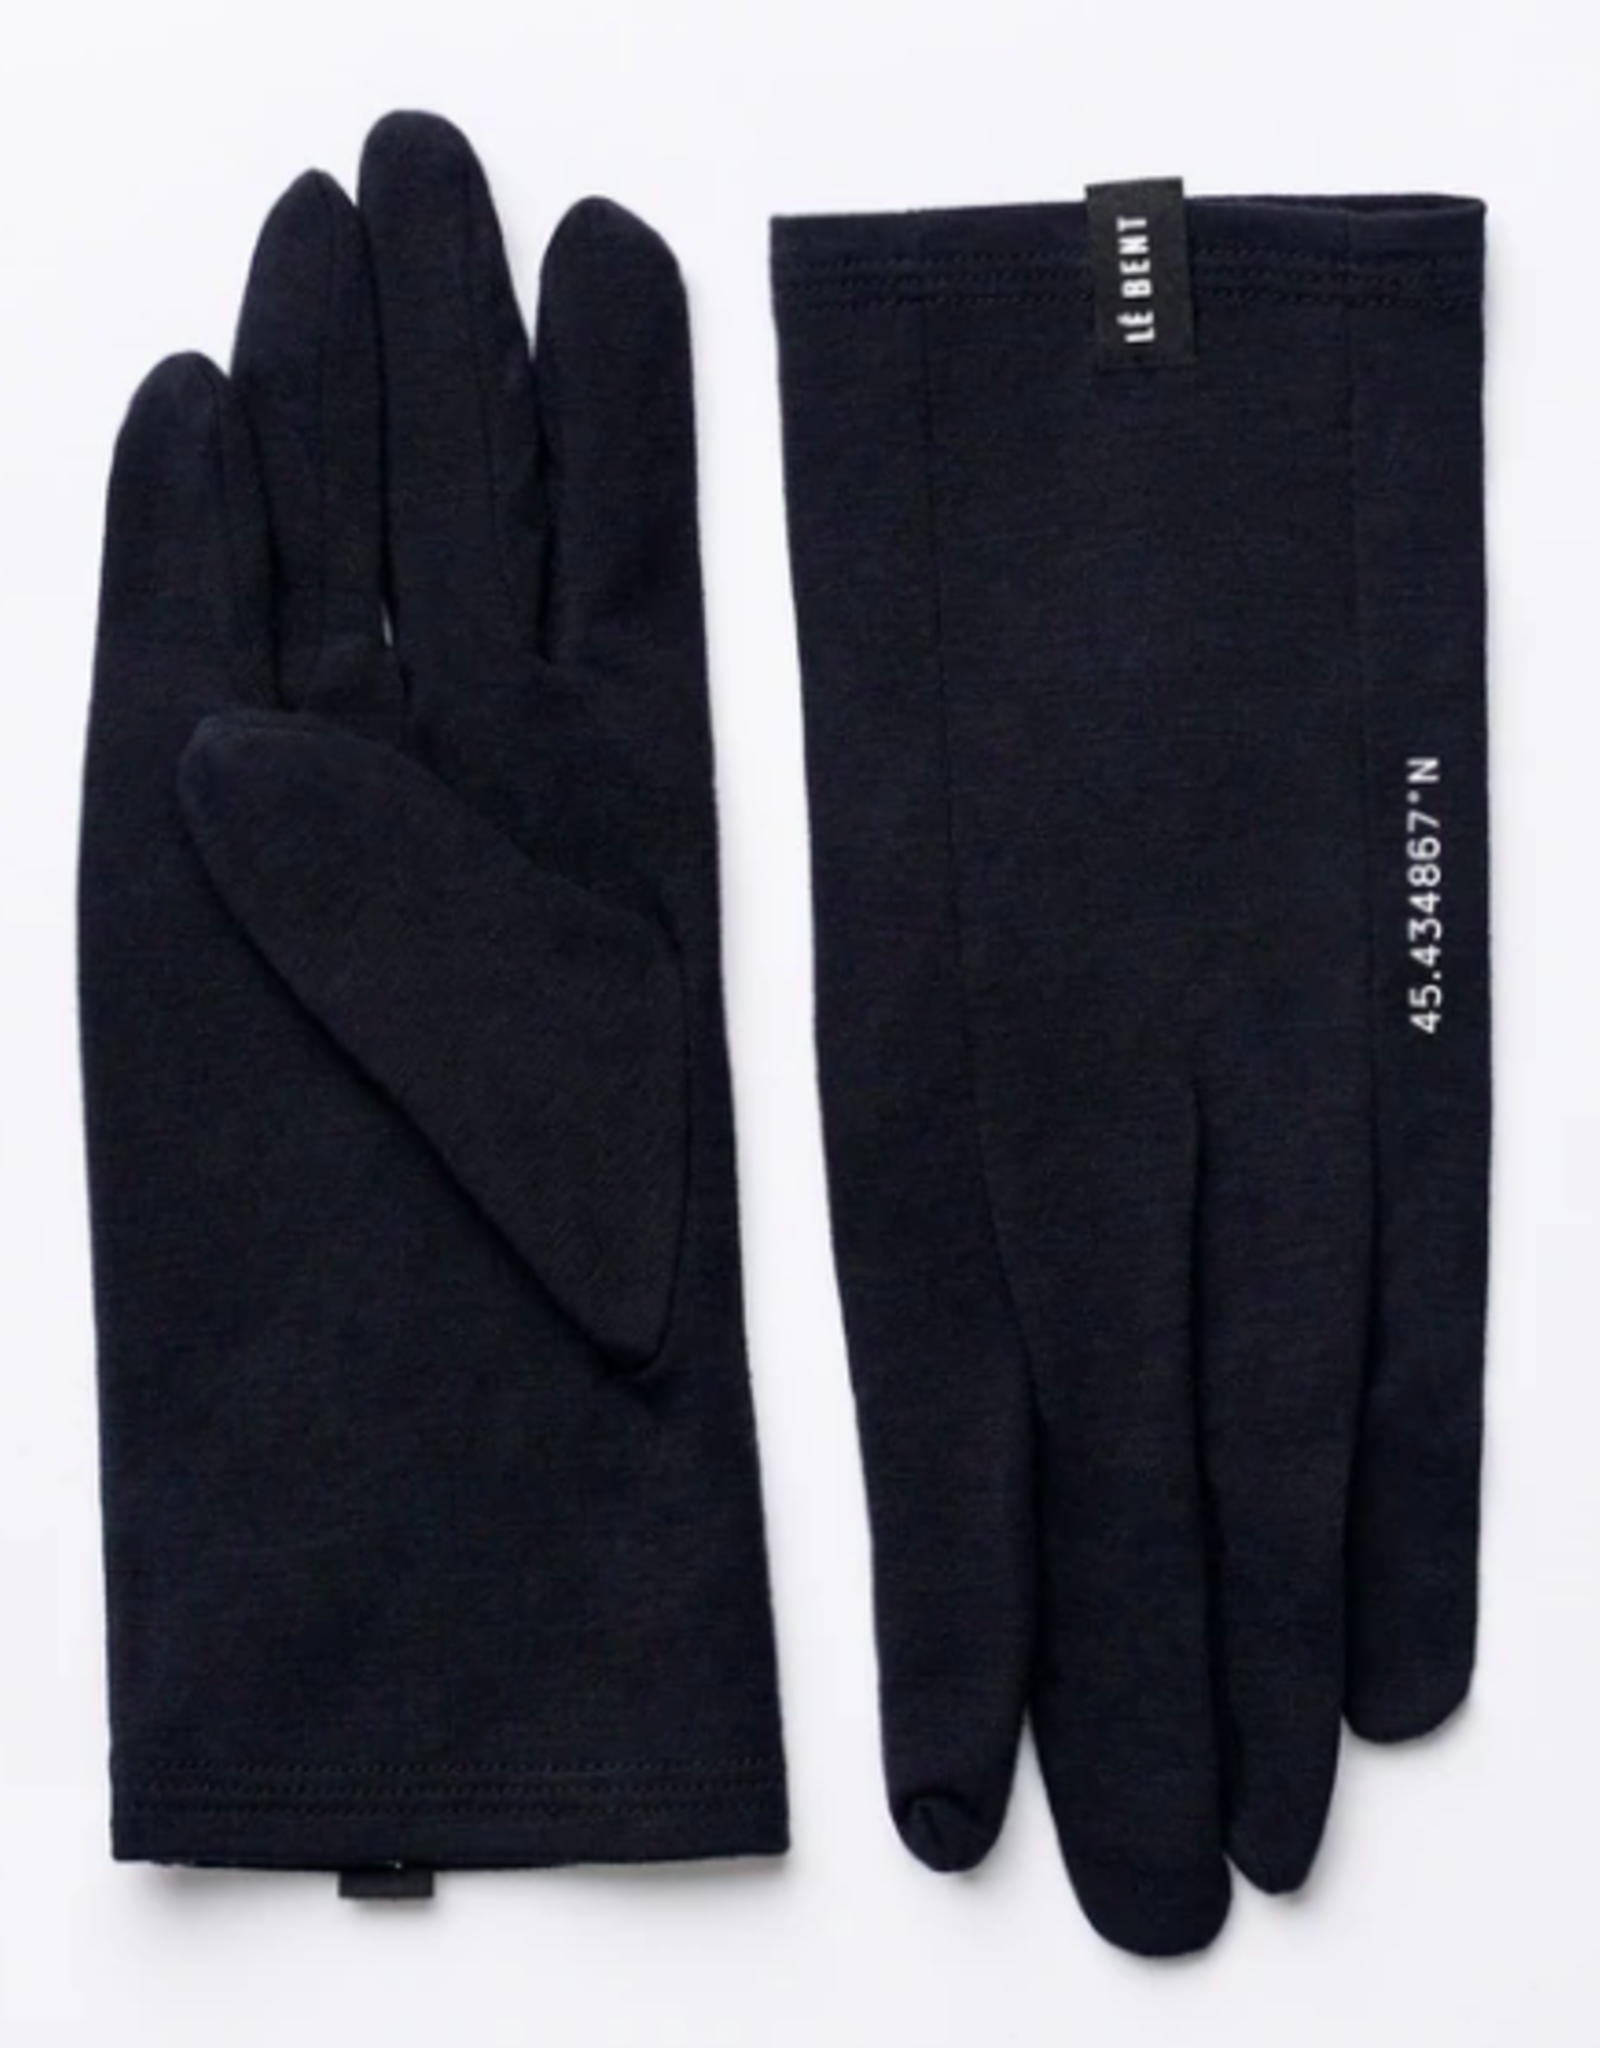 LE BENT Le Bent Core Glove Liner 260 Black 2022